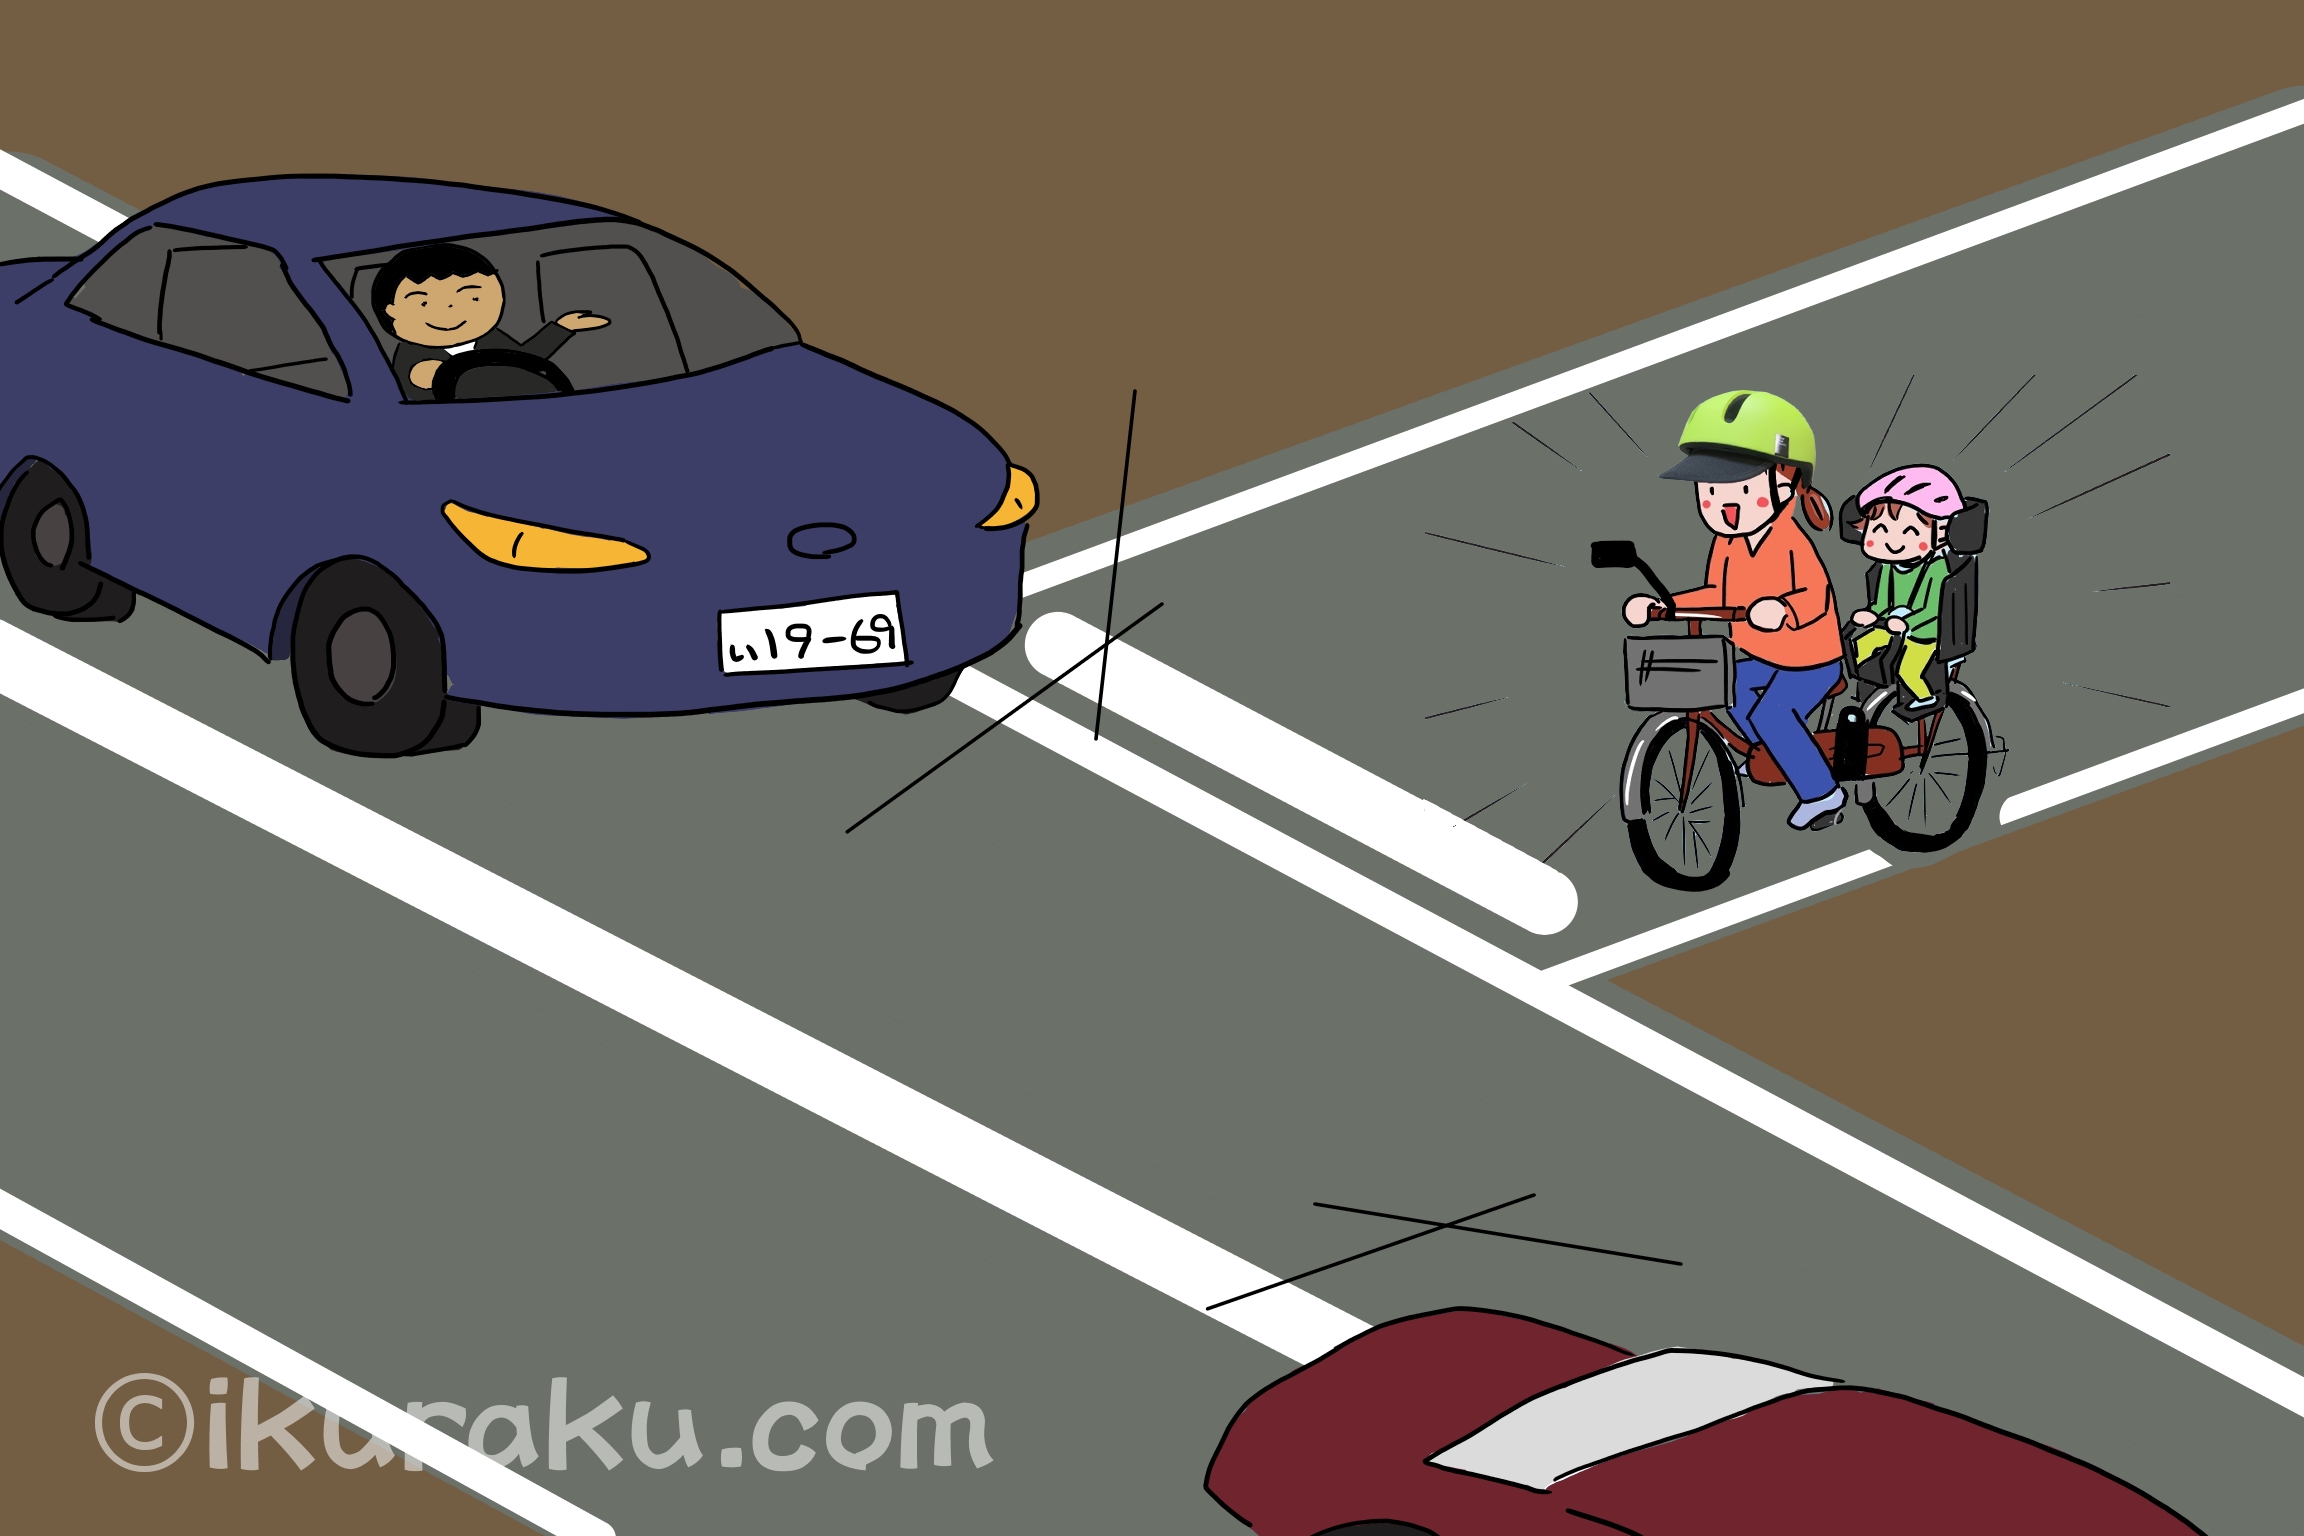 自転車乗車中にヘルメットをつけると、周囲の車からの視認性が増して安全運転してもらえる